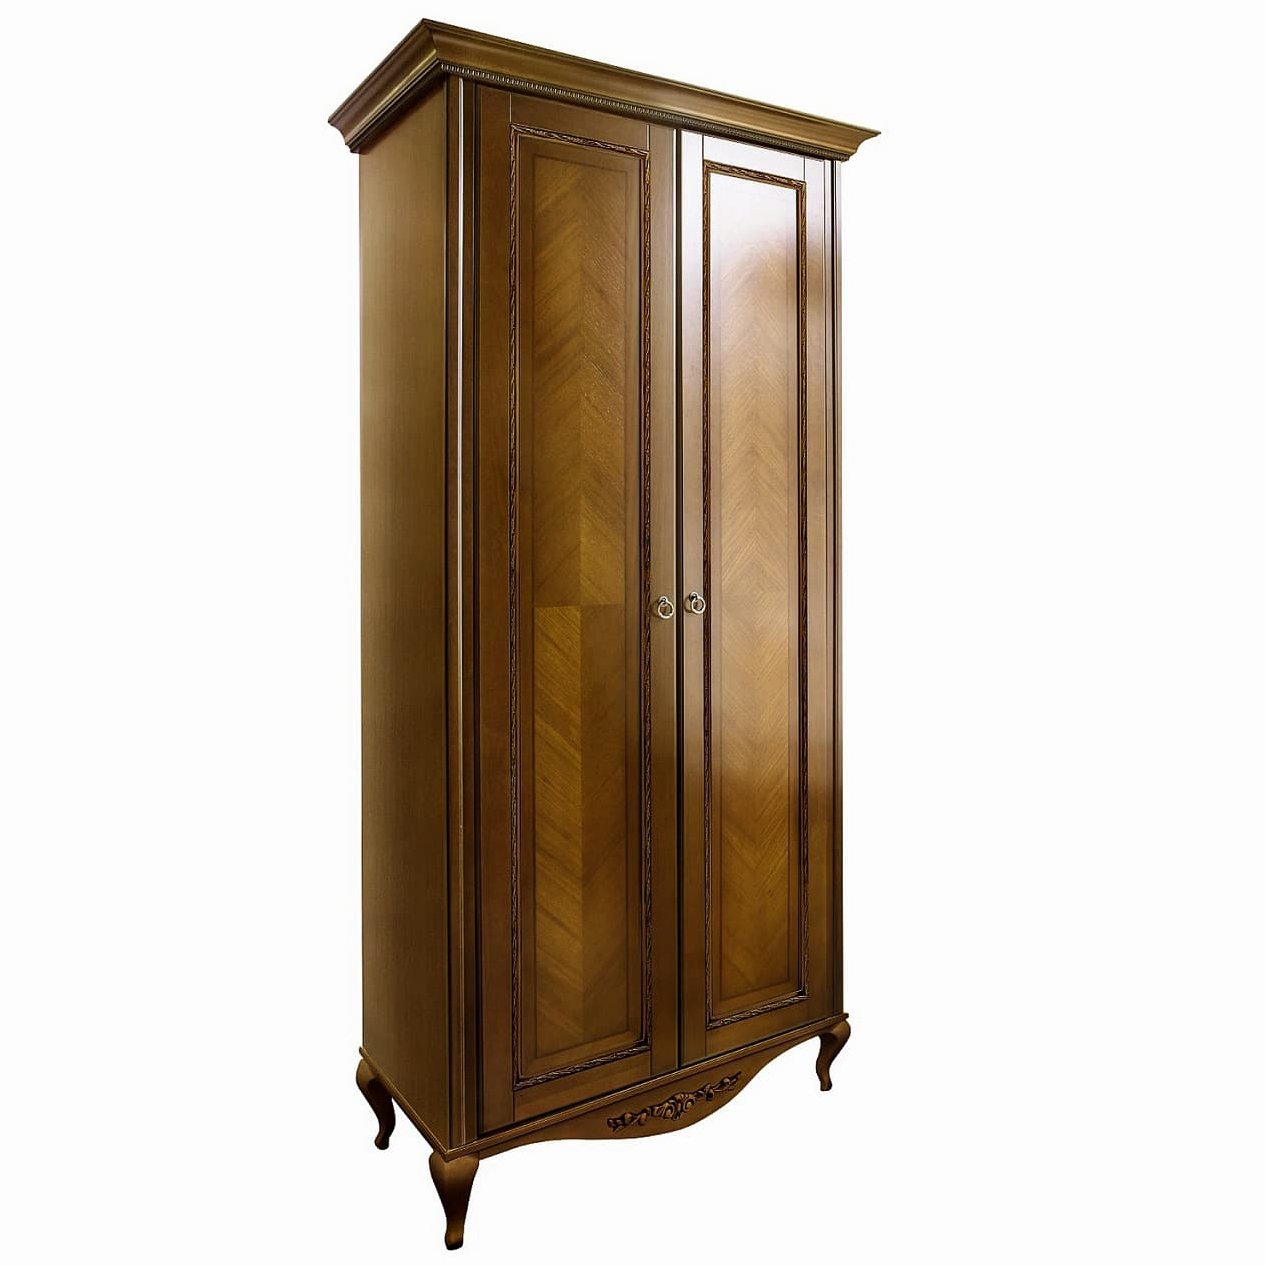 Шкаф платяной Timber Неаполь, 2-х дверный 114x65x227 см, цвет: орех (Т-522/N)Т-522